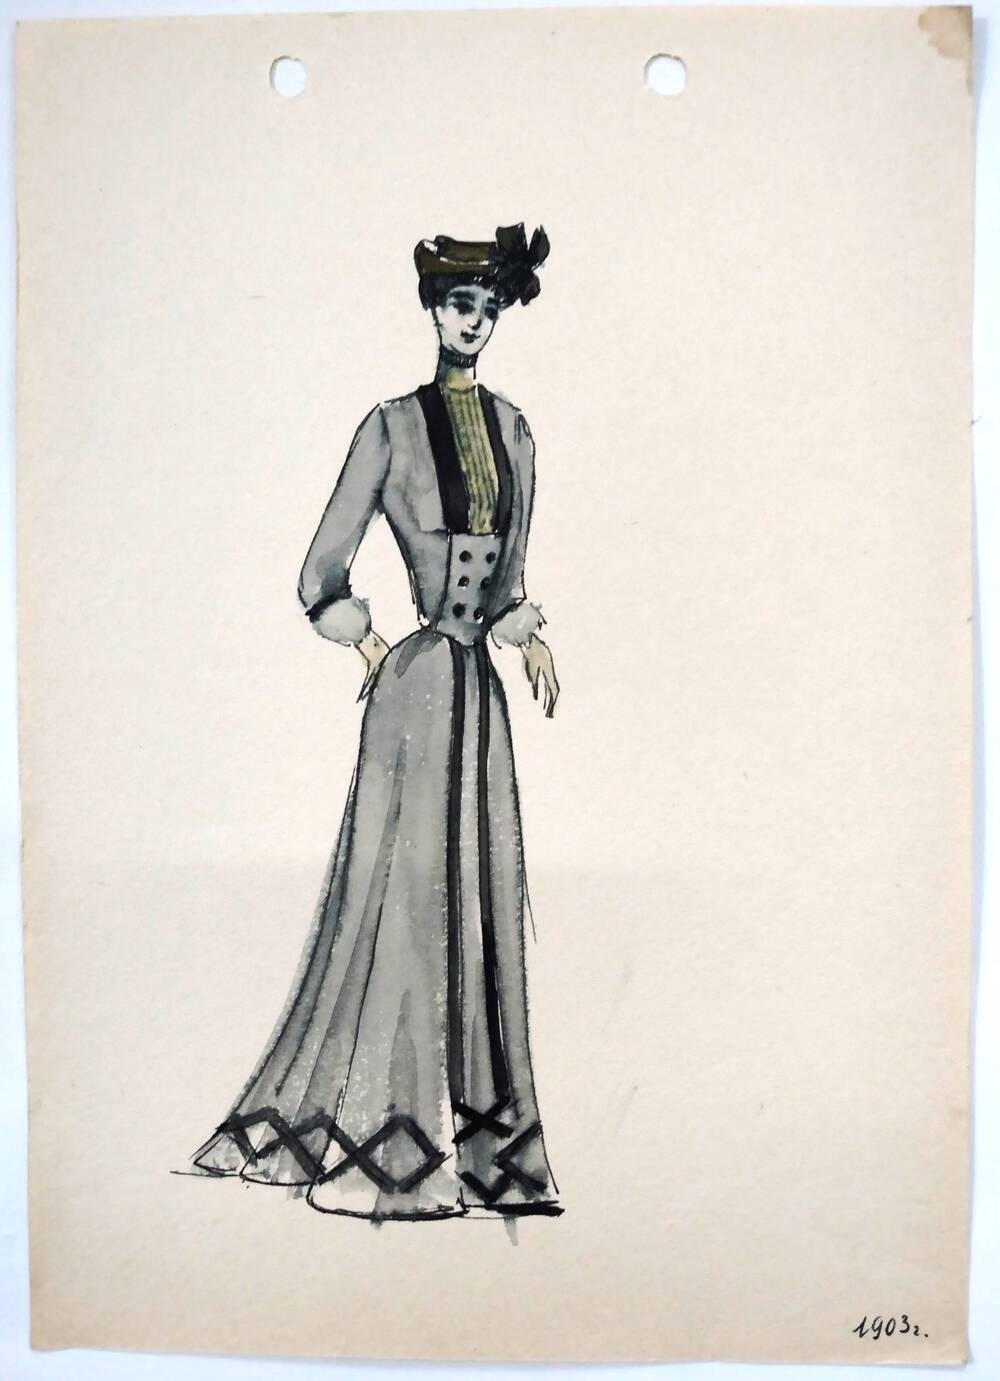 Чернышова Г.А. Эскиз женского костюма со шляпкой 1903 года в серой гамме с черной отделкой, низ юбки украшен геометрическим черным орнаментом.